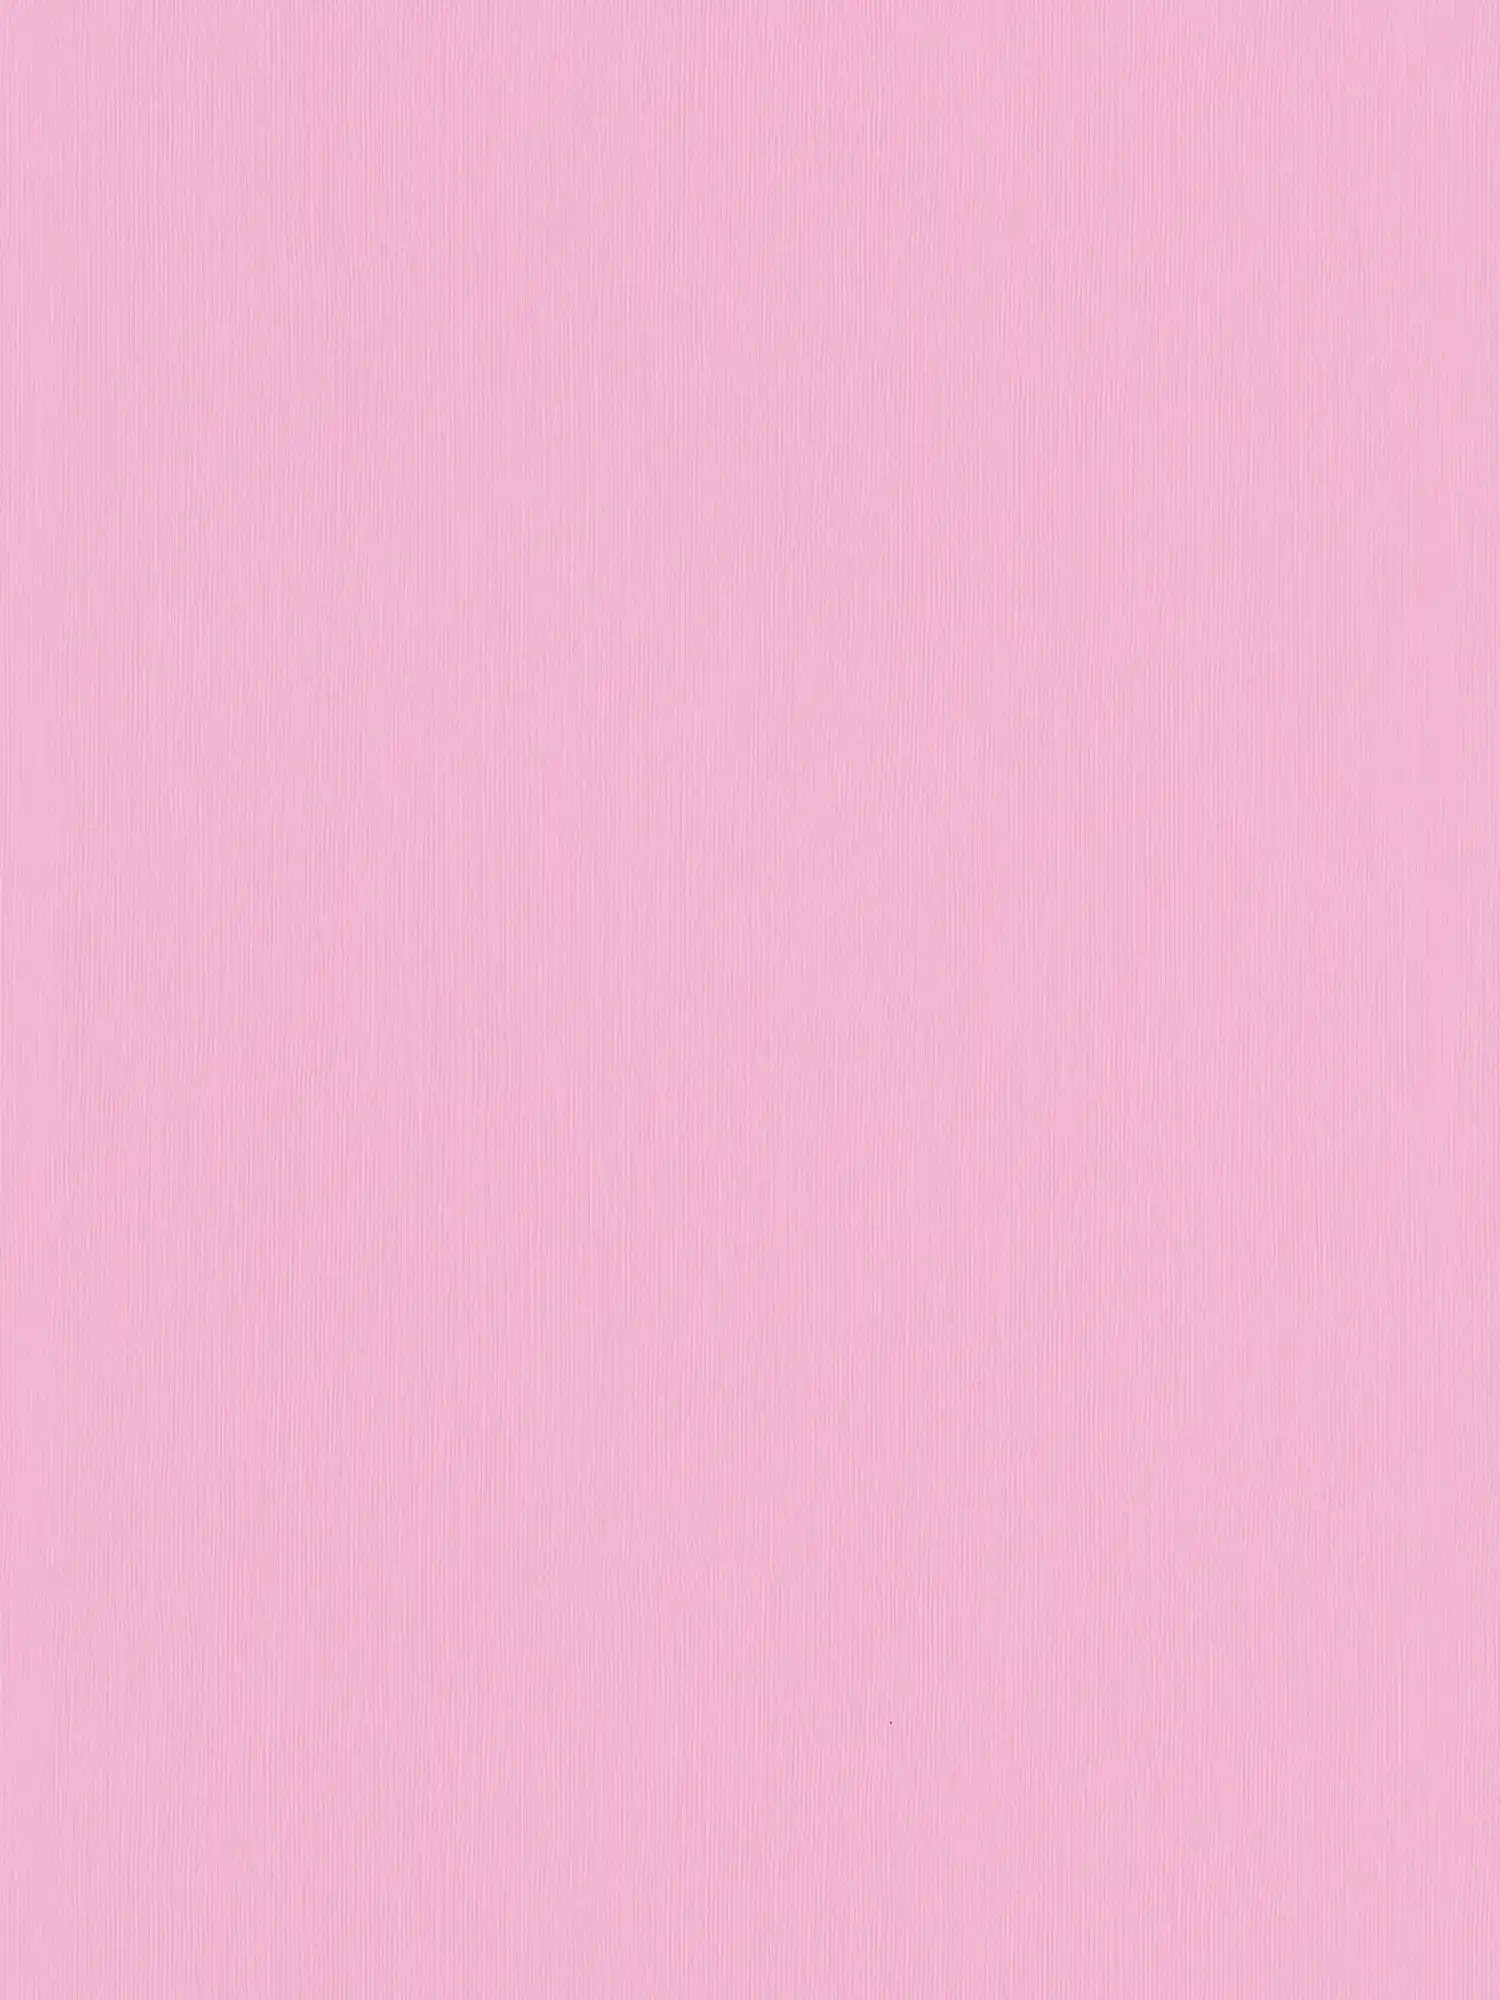 Carta da parati rosa tinta unita con texture in rilievo - Rosa
